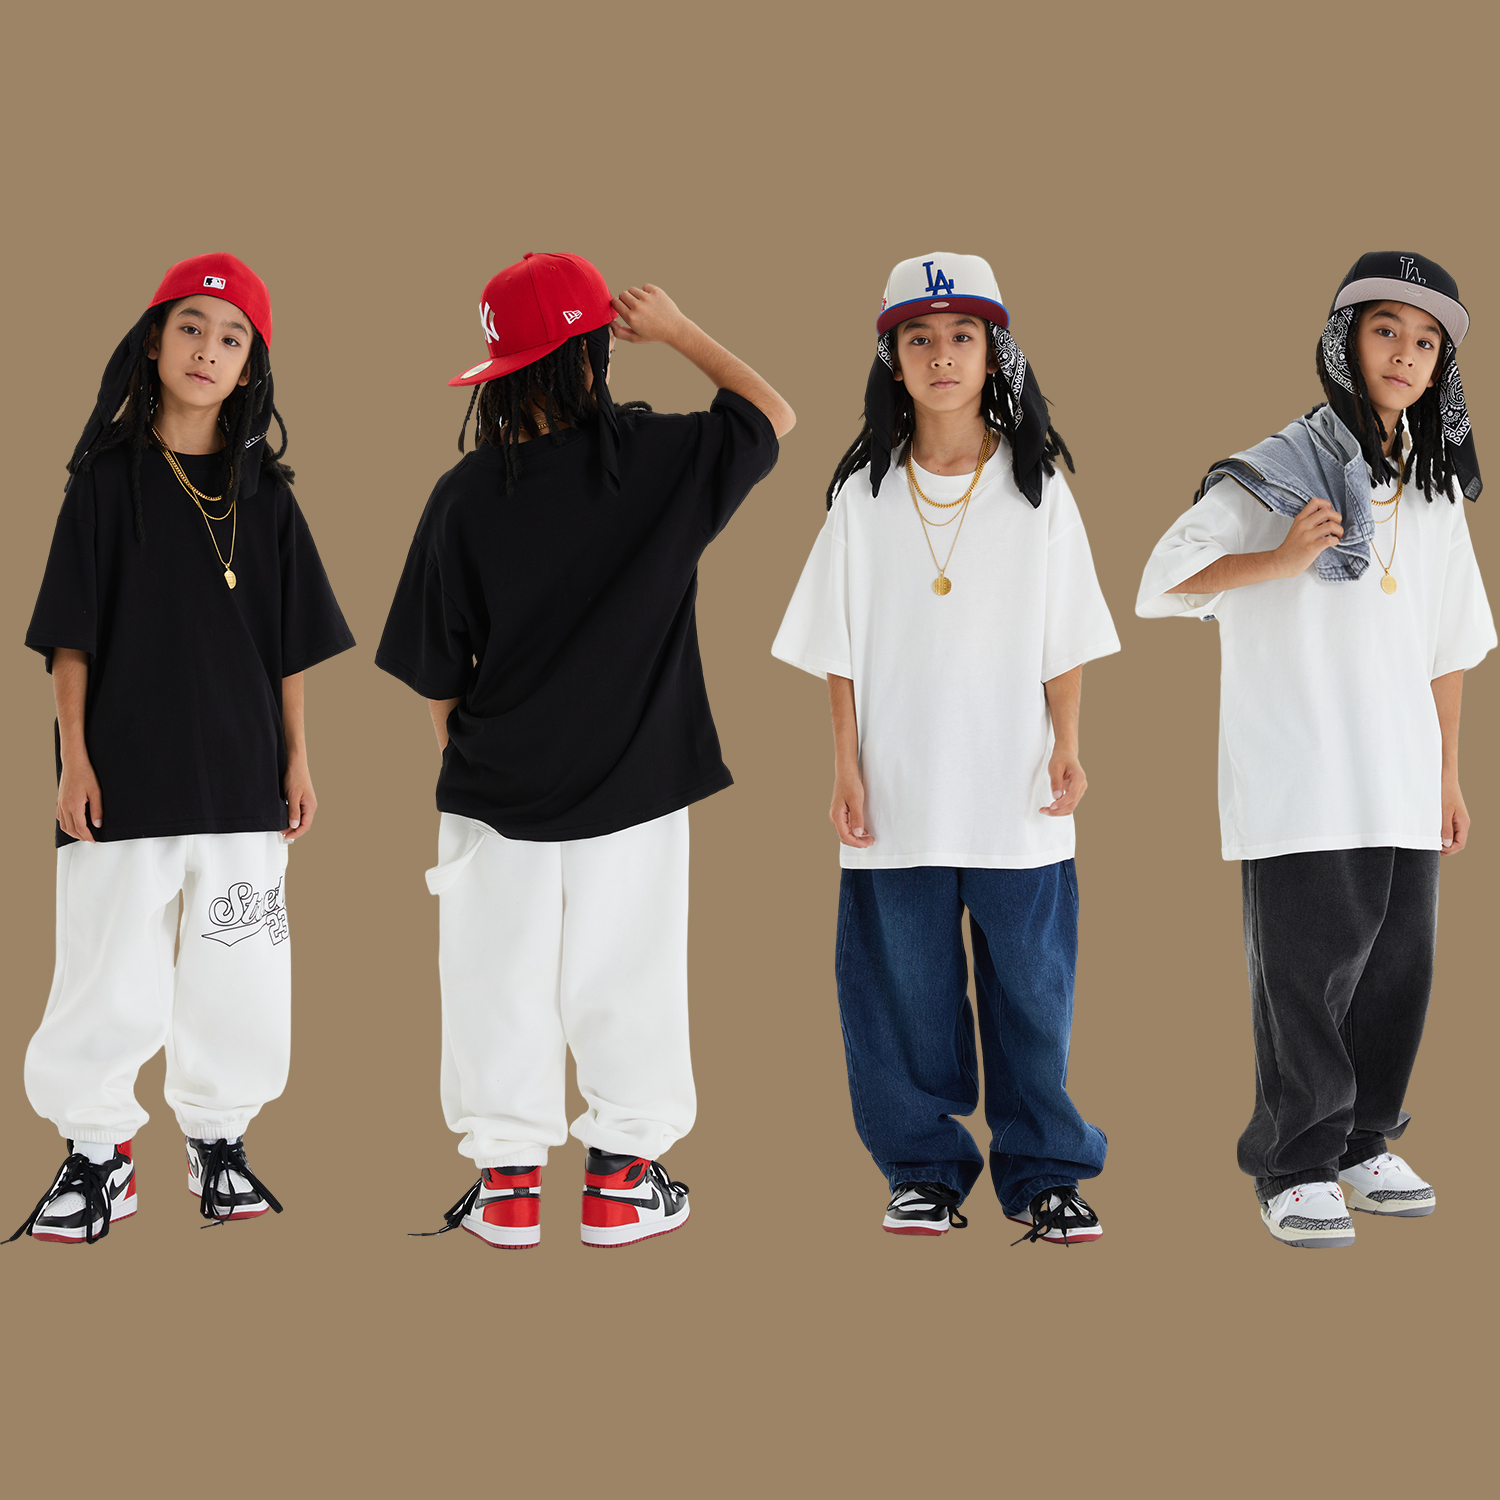 少儿街舞演出服套装宽松嘻哈hiphop儿童爵士舞蹈表演男童潮服夏季